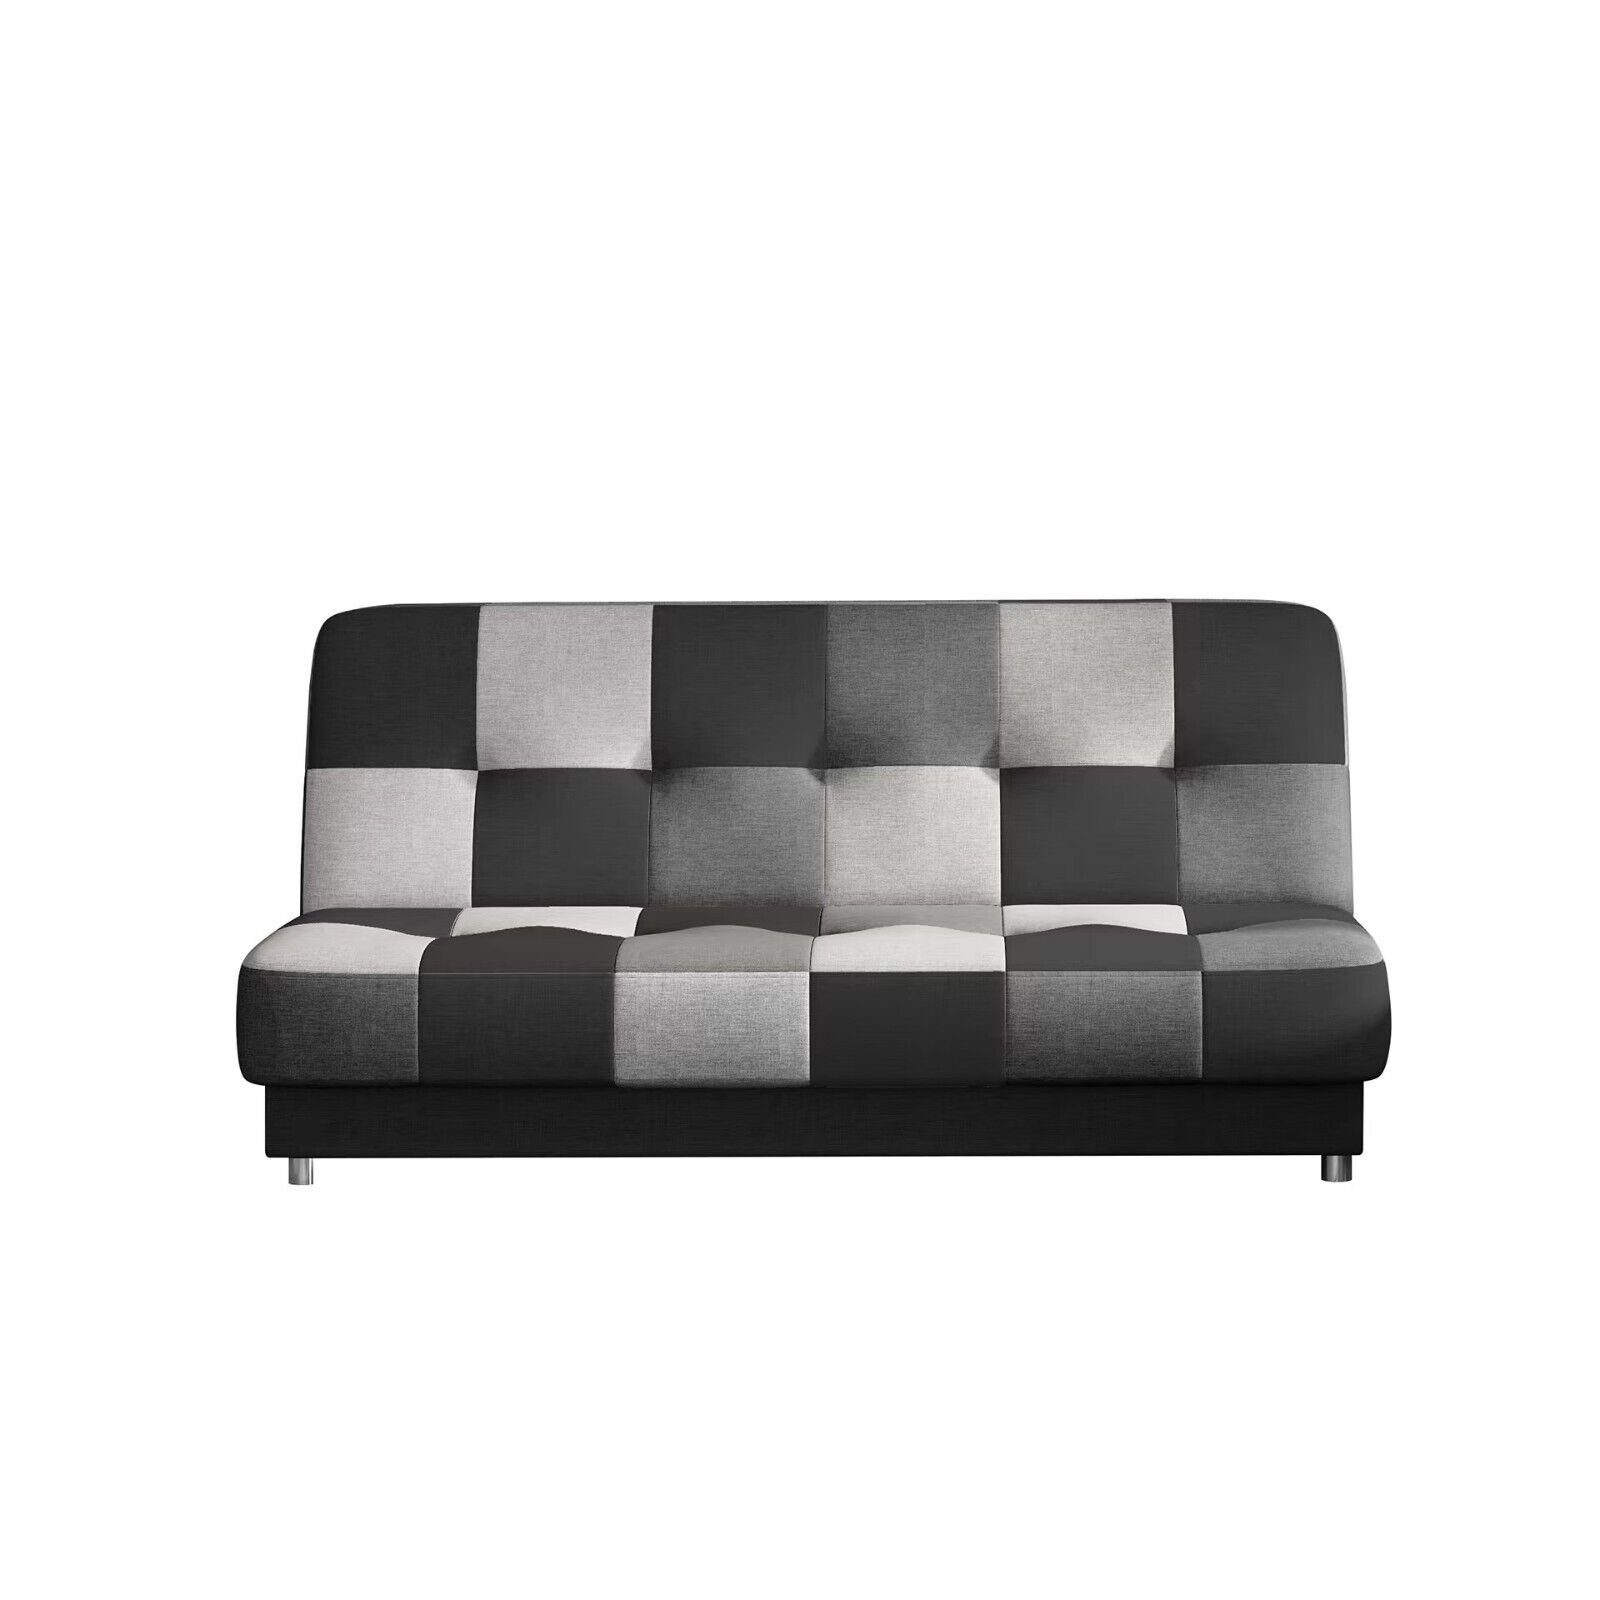 JVmoebel Schlafsofa Luxus Wohnzimmer Sofa Modern Couch Textil Wohnlandschaft Sofort, 1 Teile, Made in Europa